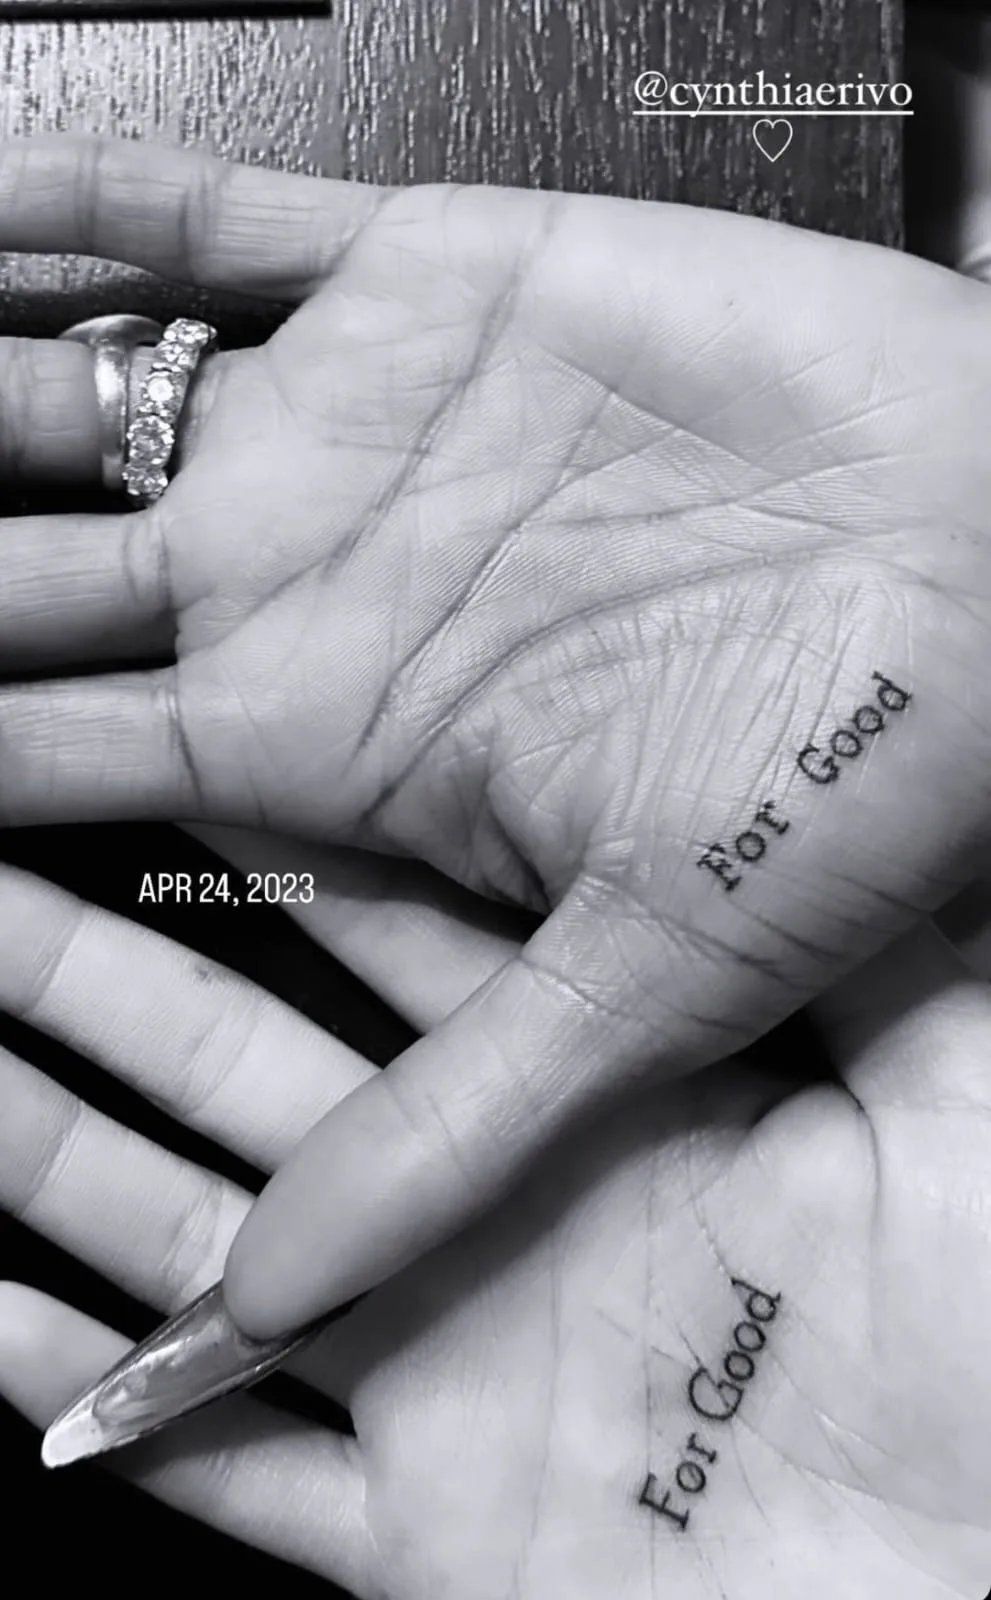 Ariana Grande e Cynthia Erivo selam amizade com tattoo igual de "Wicked"